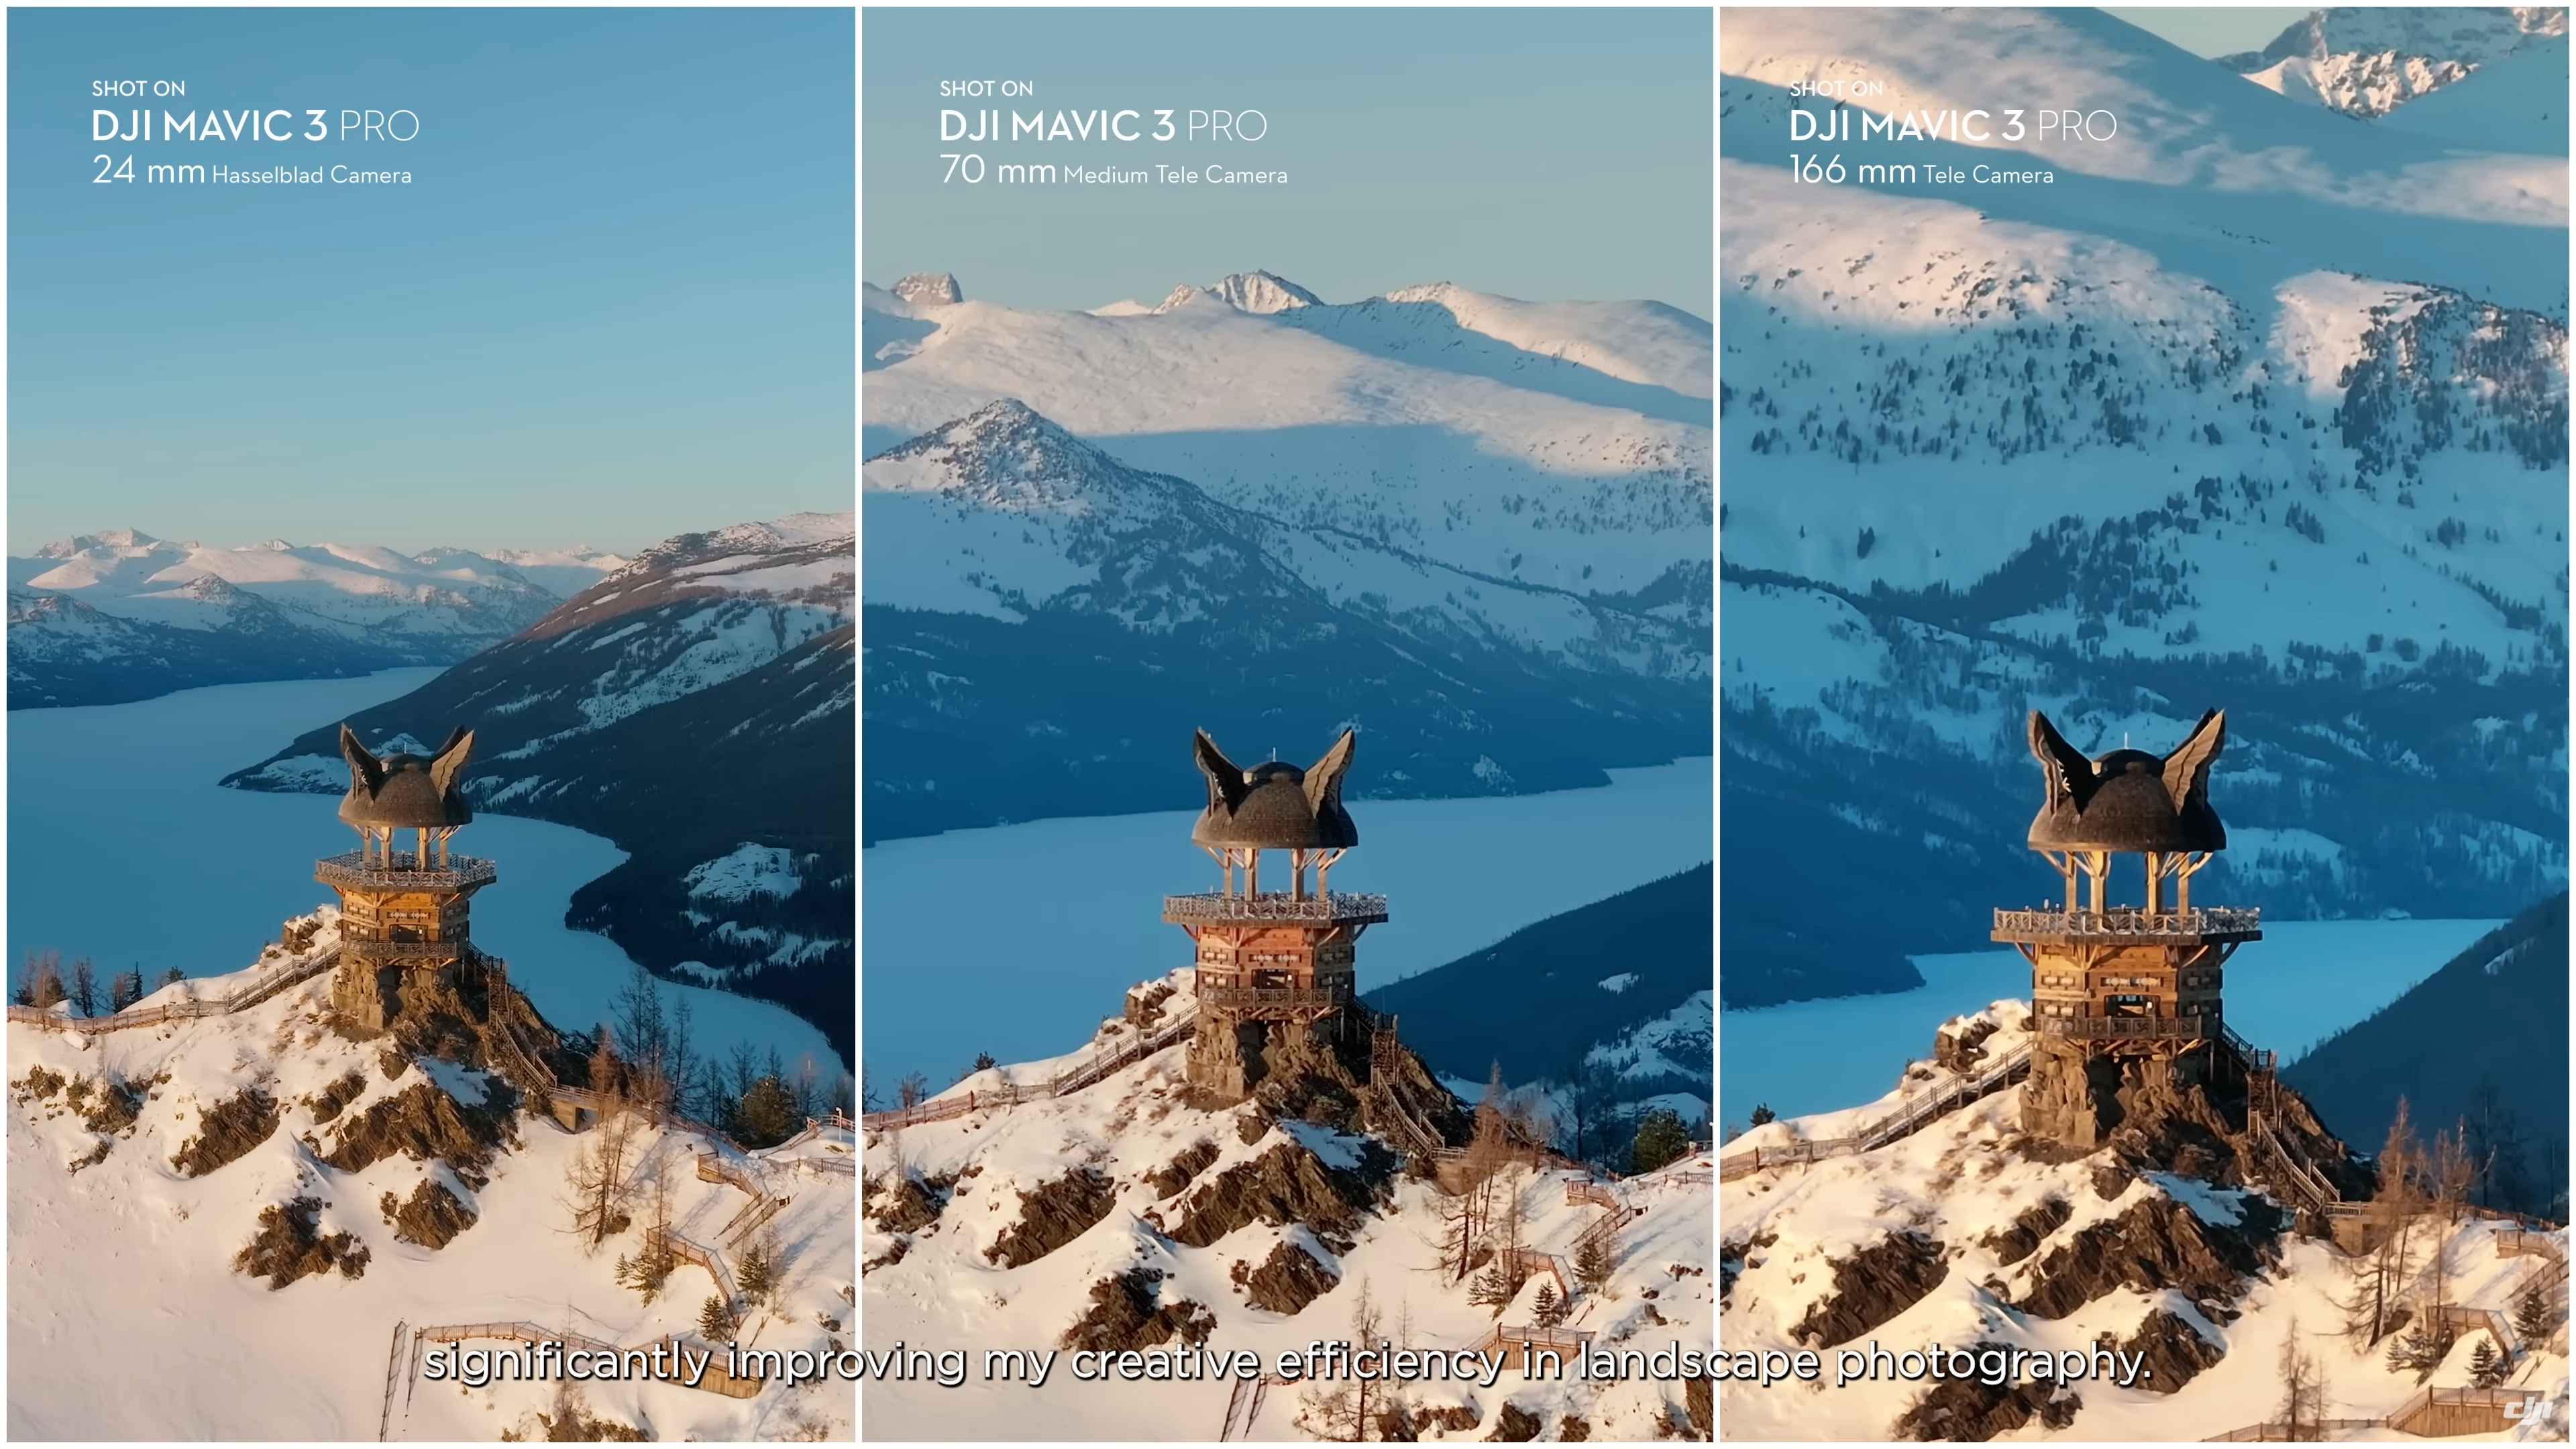 Trois photos d'une montagne et d'une flèche prises avec différents objectifs Mavic 3 Pro